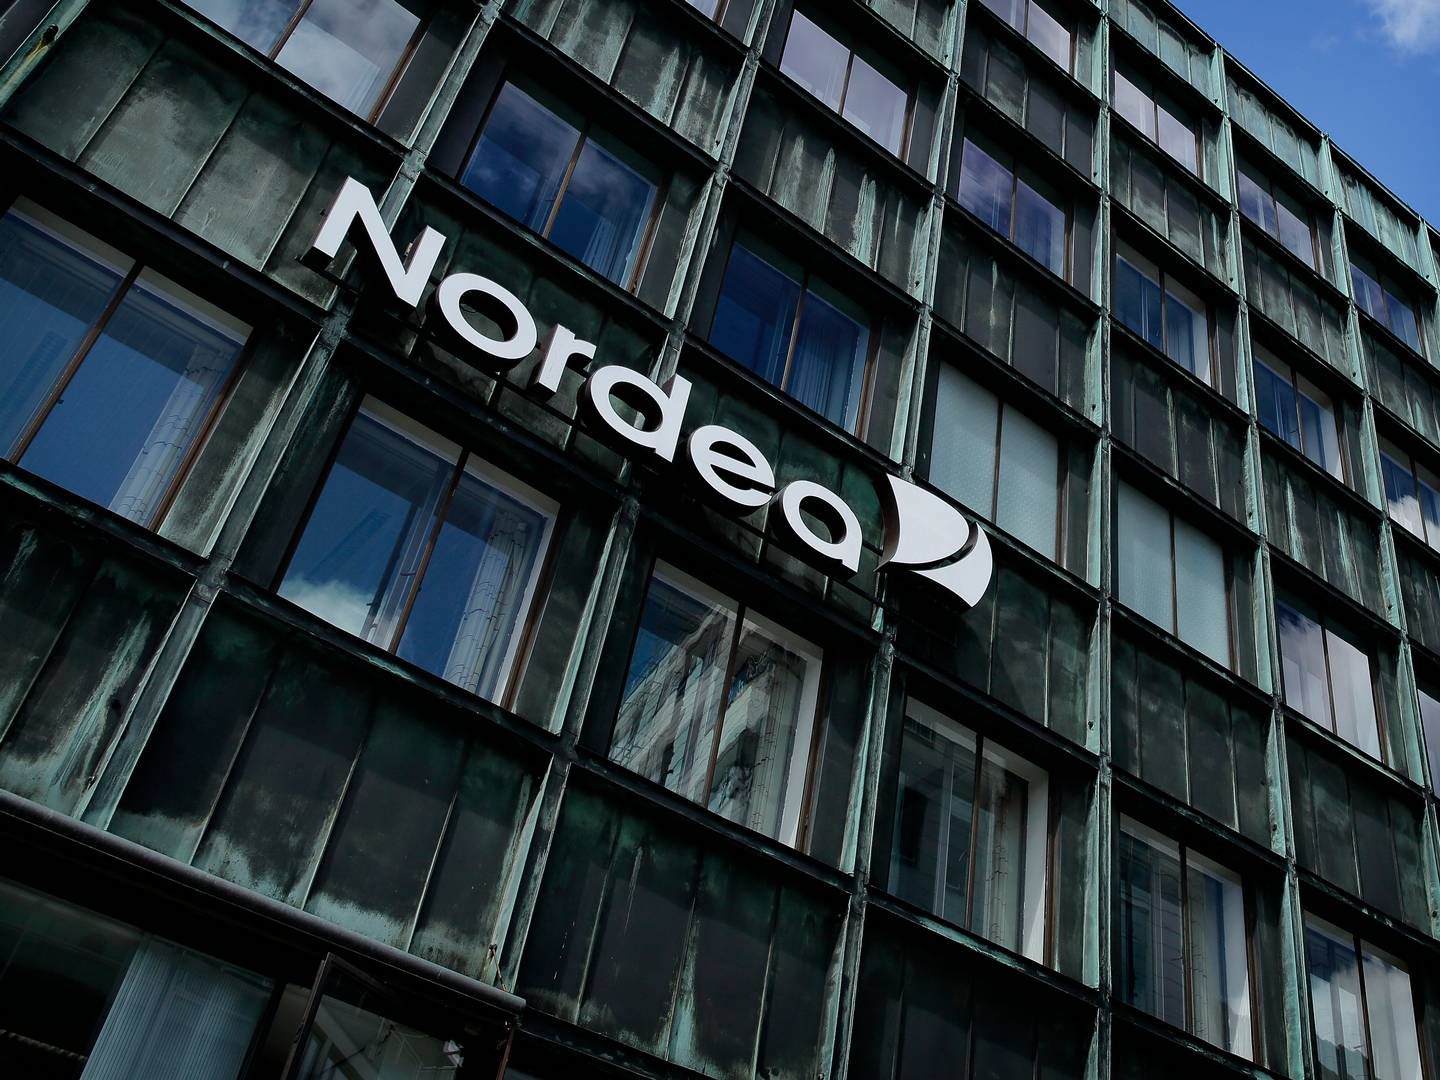 Nordea blev i 2016 blev politianmeldt af Finanstilsynet for overtrædelse af loven om hvidvaskning af penge. | Foto: Jens Dresling